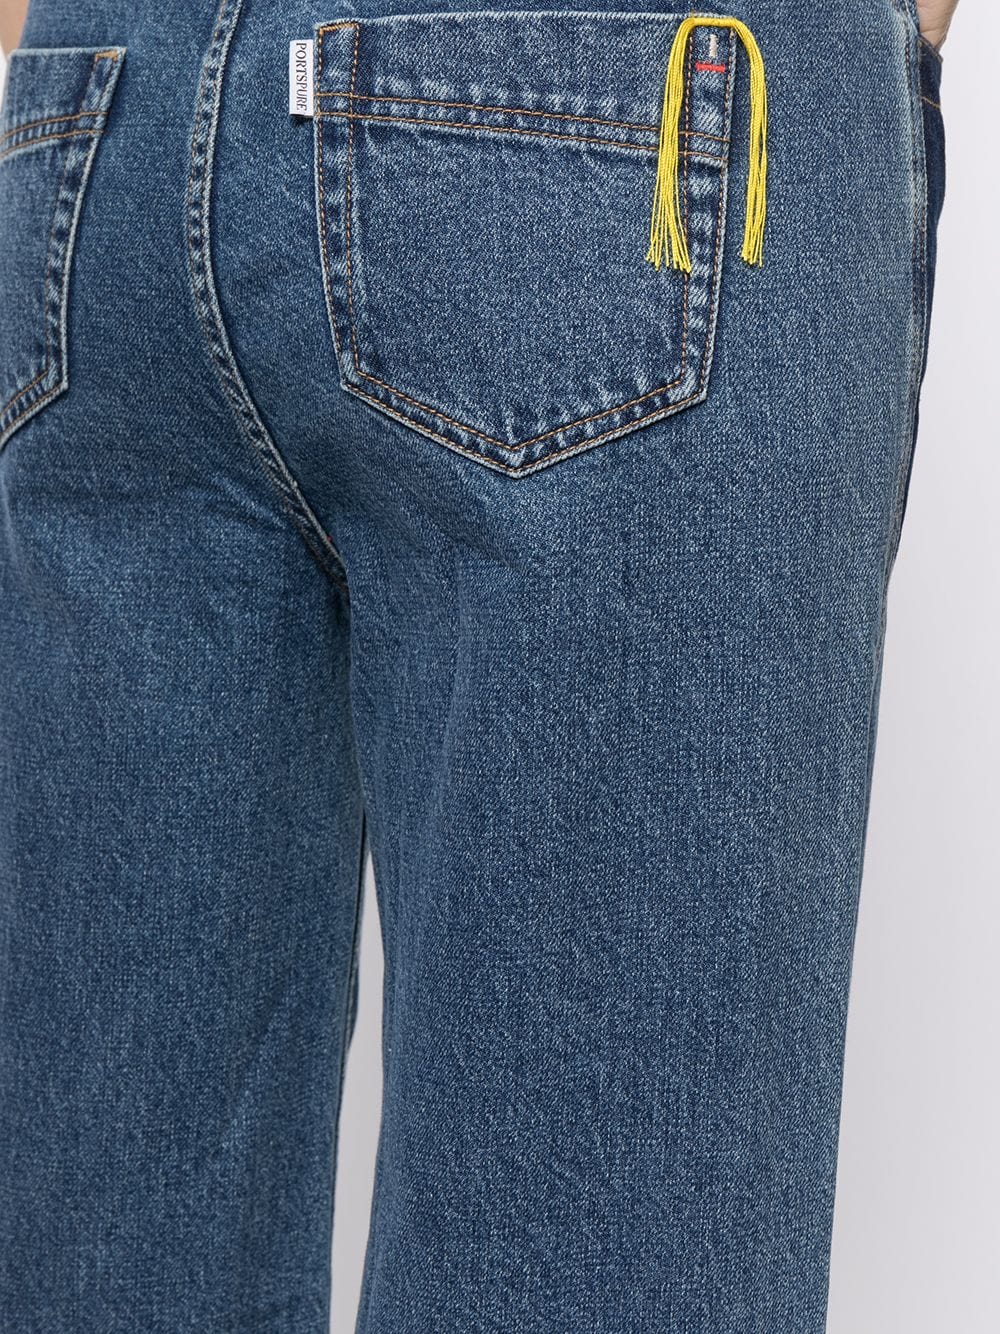 фото Portspure широкие джинсы с контрастными карманами